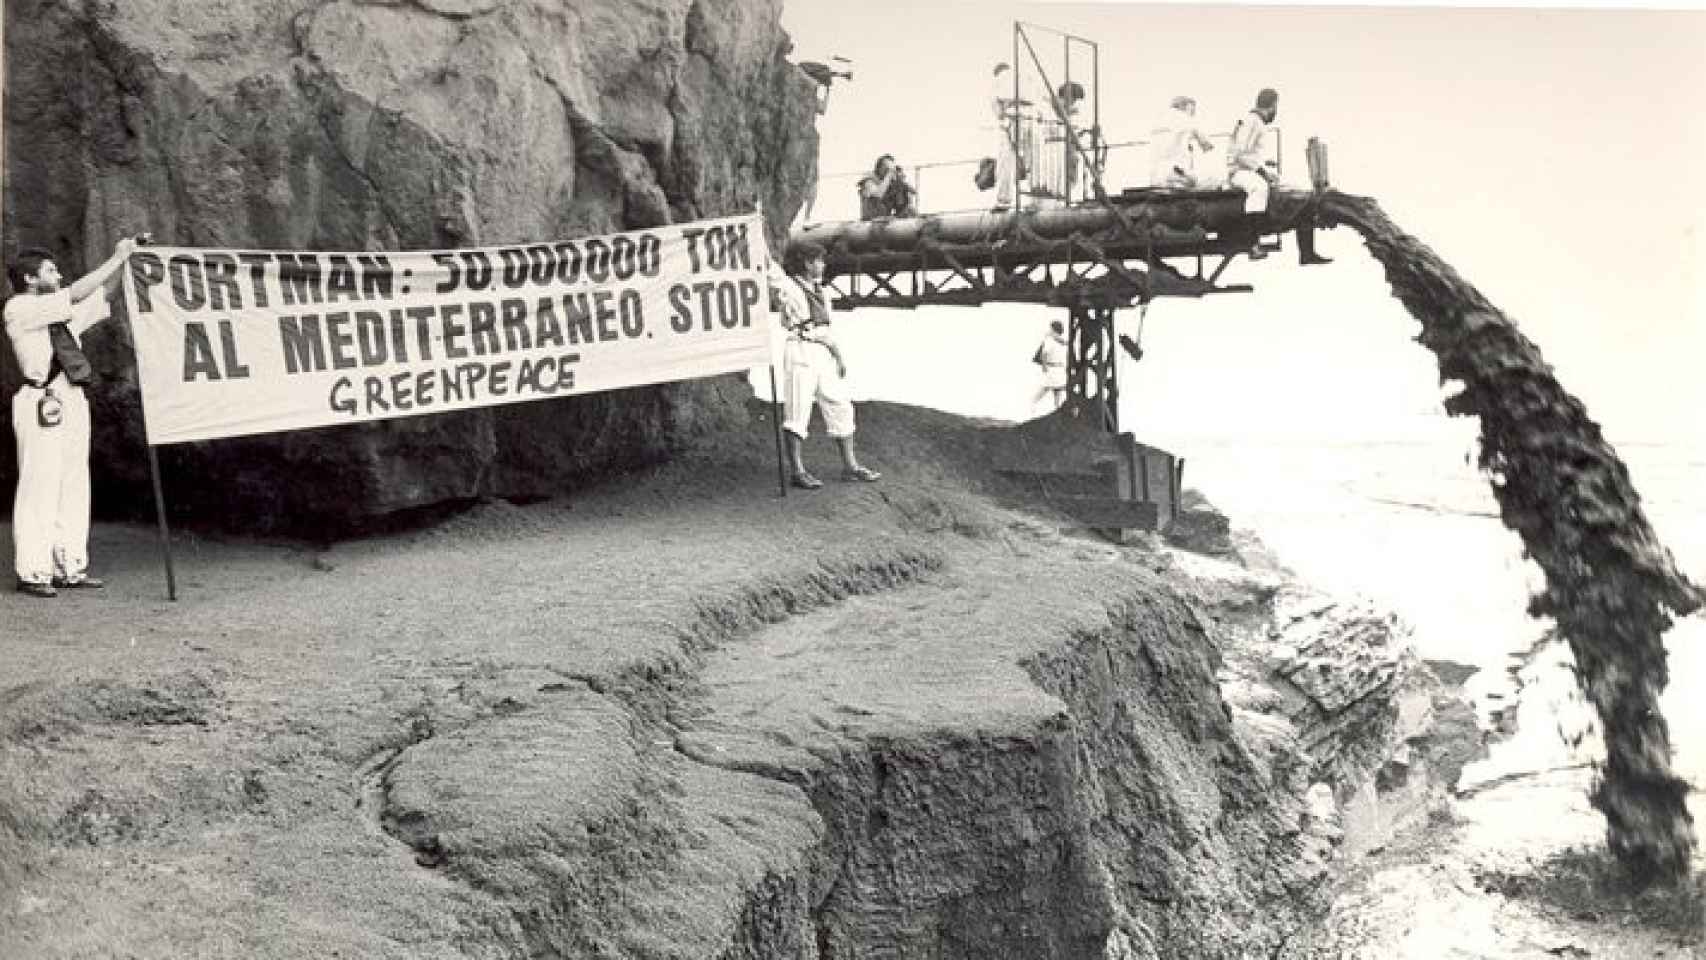 Intervención de Greenpeace en Portmán en 1986 para visibilizar la contaminación de los vertidos sobre el mar.